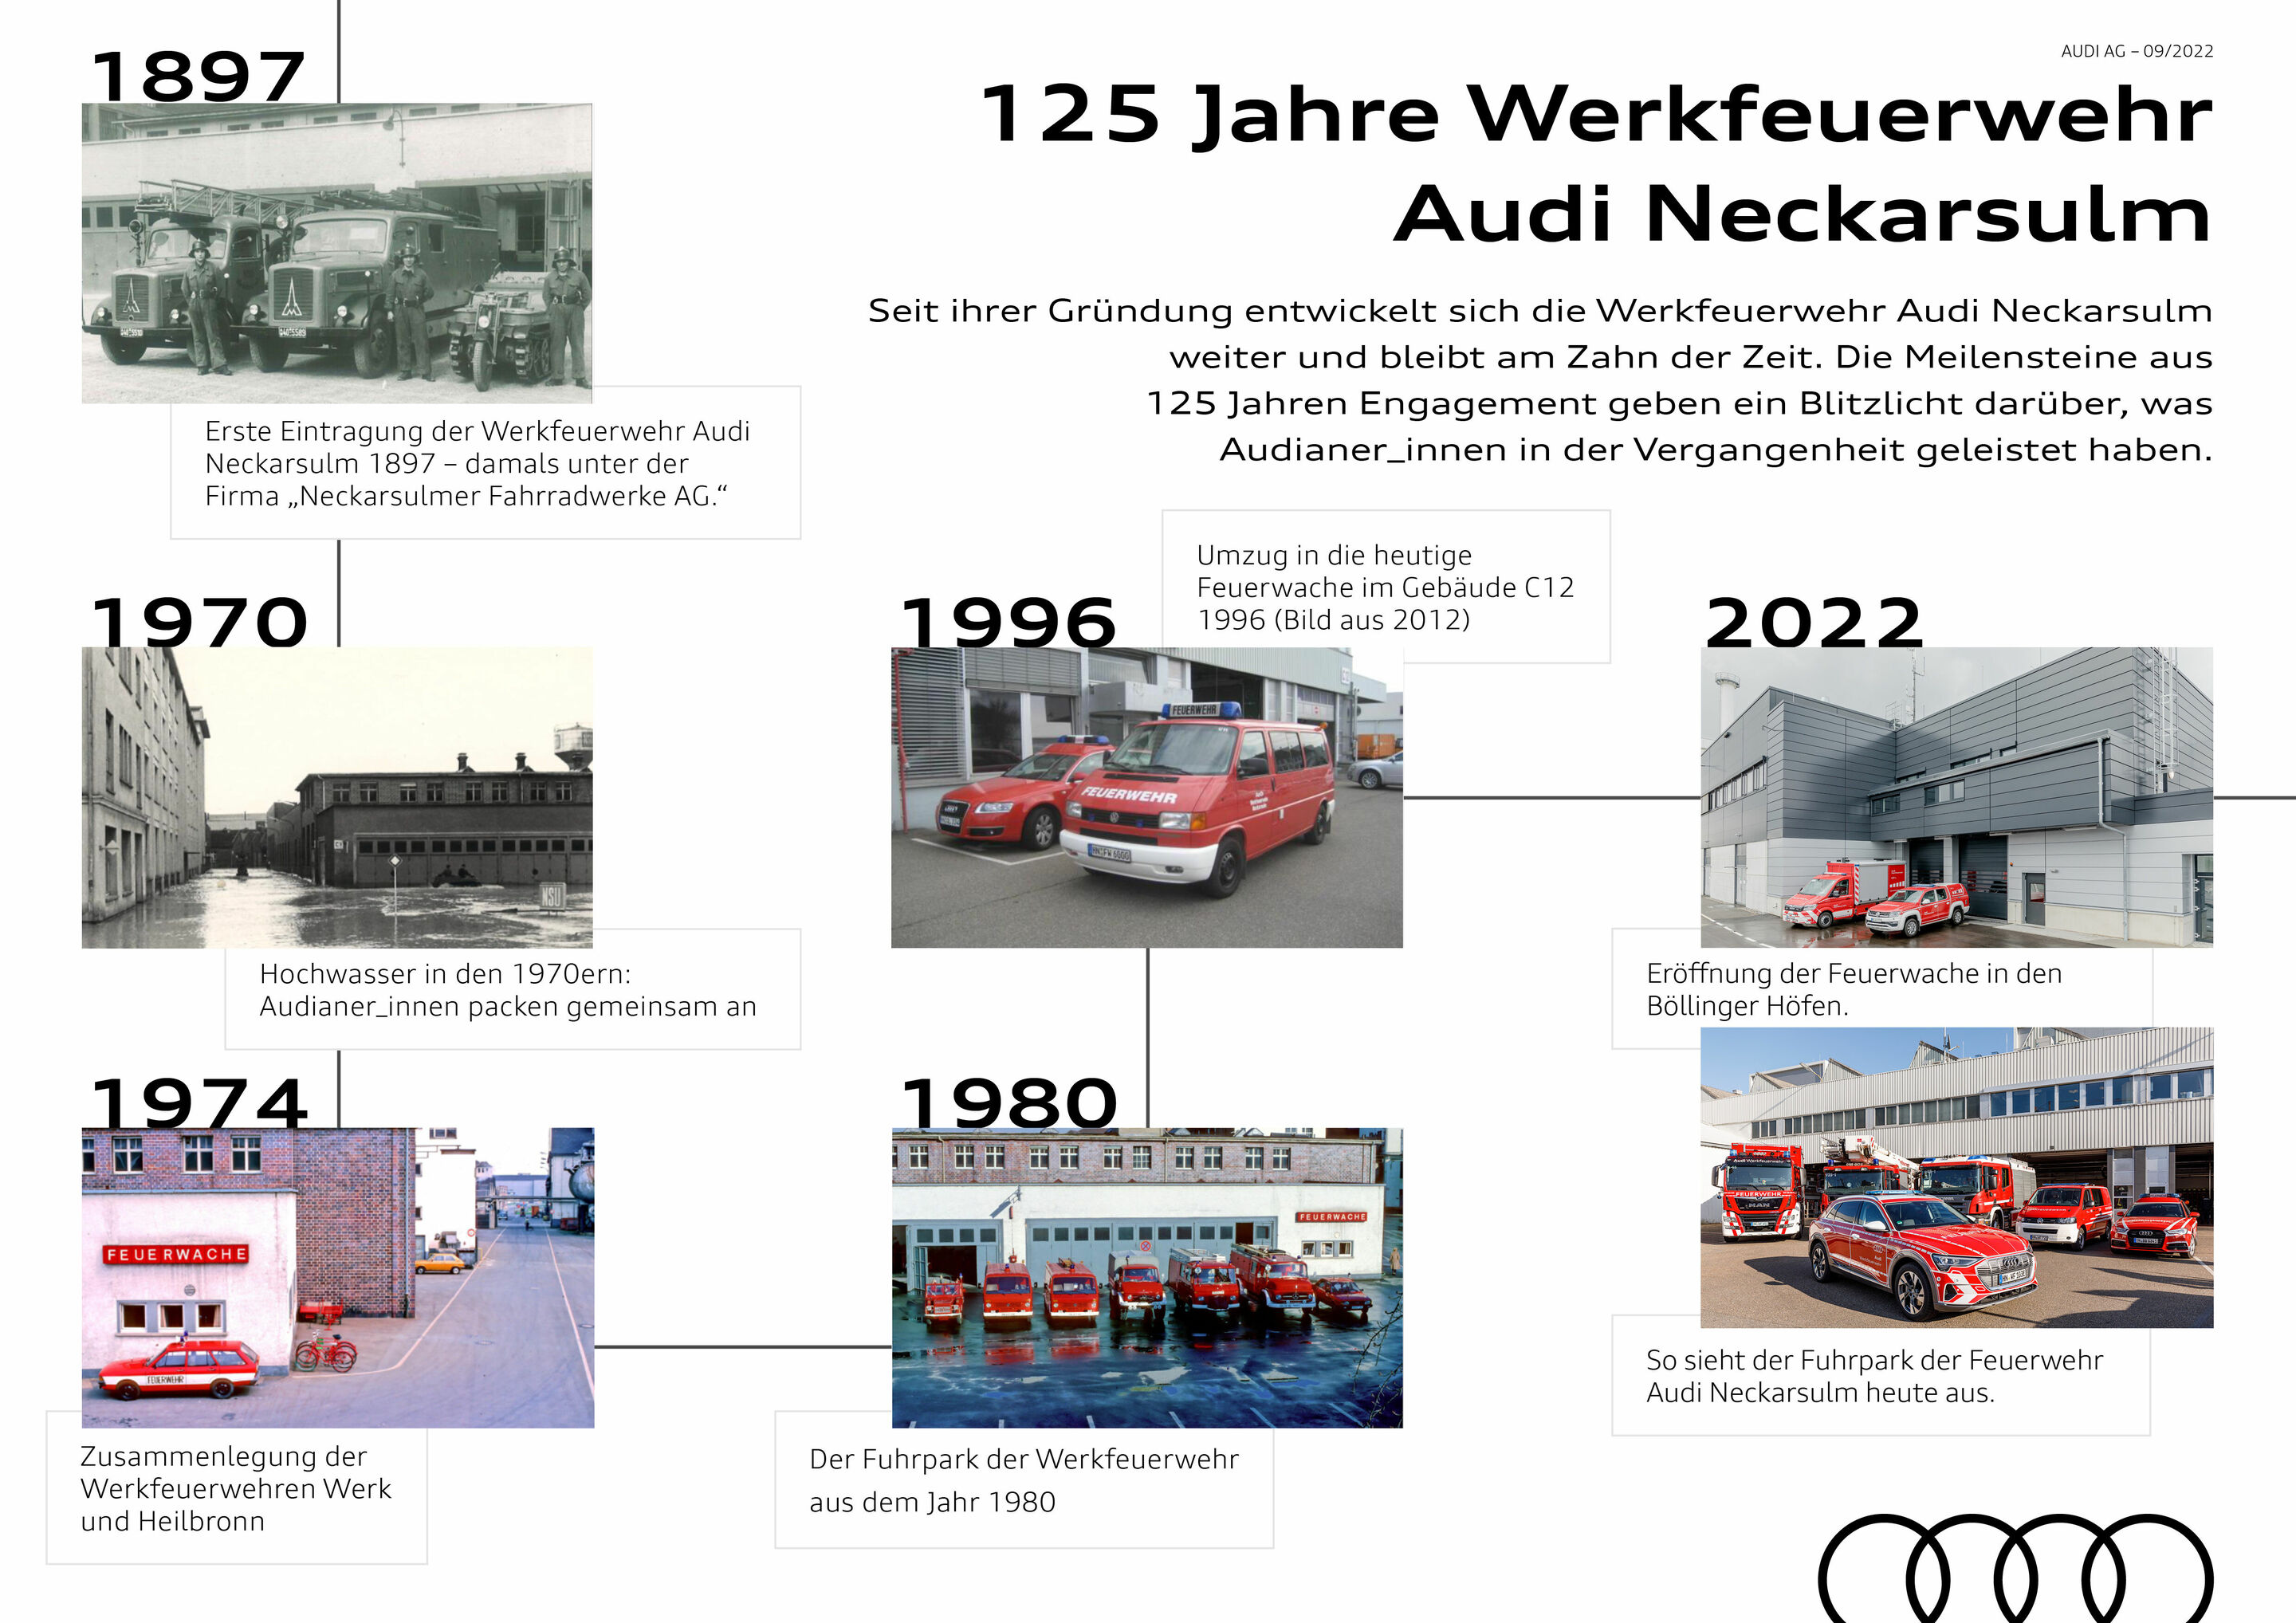 Werkfeuerwehr Audi Neckarsulm feiert Jubiläum: 125 Jahre Sicherheit, Prävention und Schutz